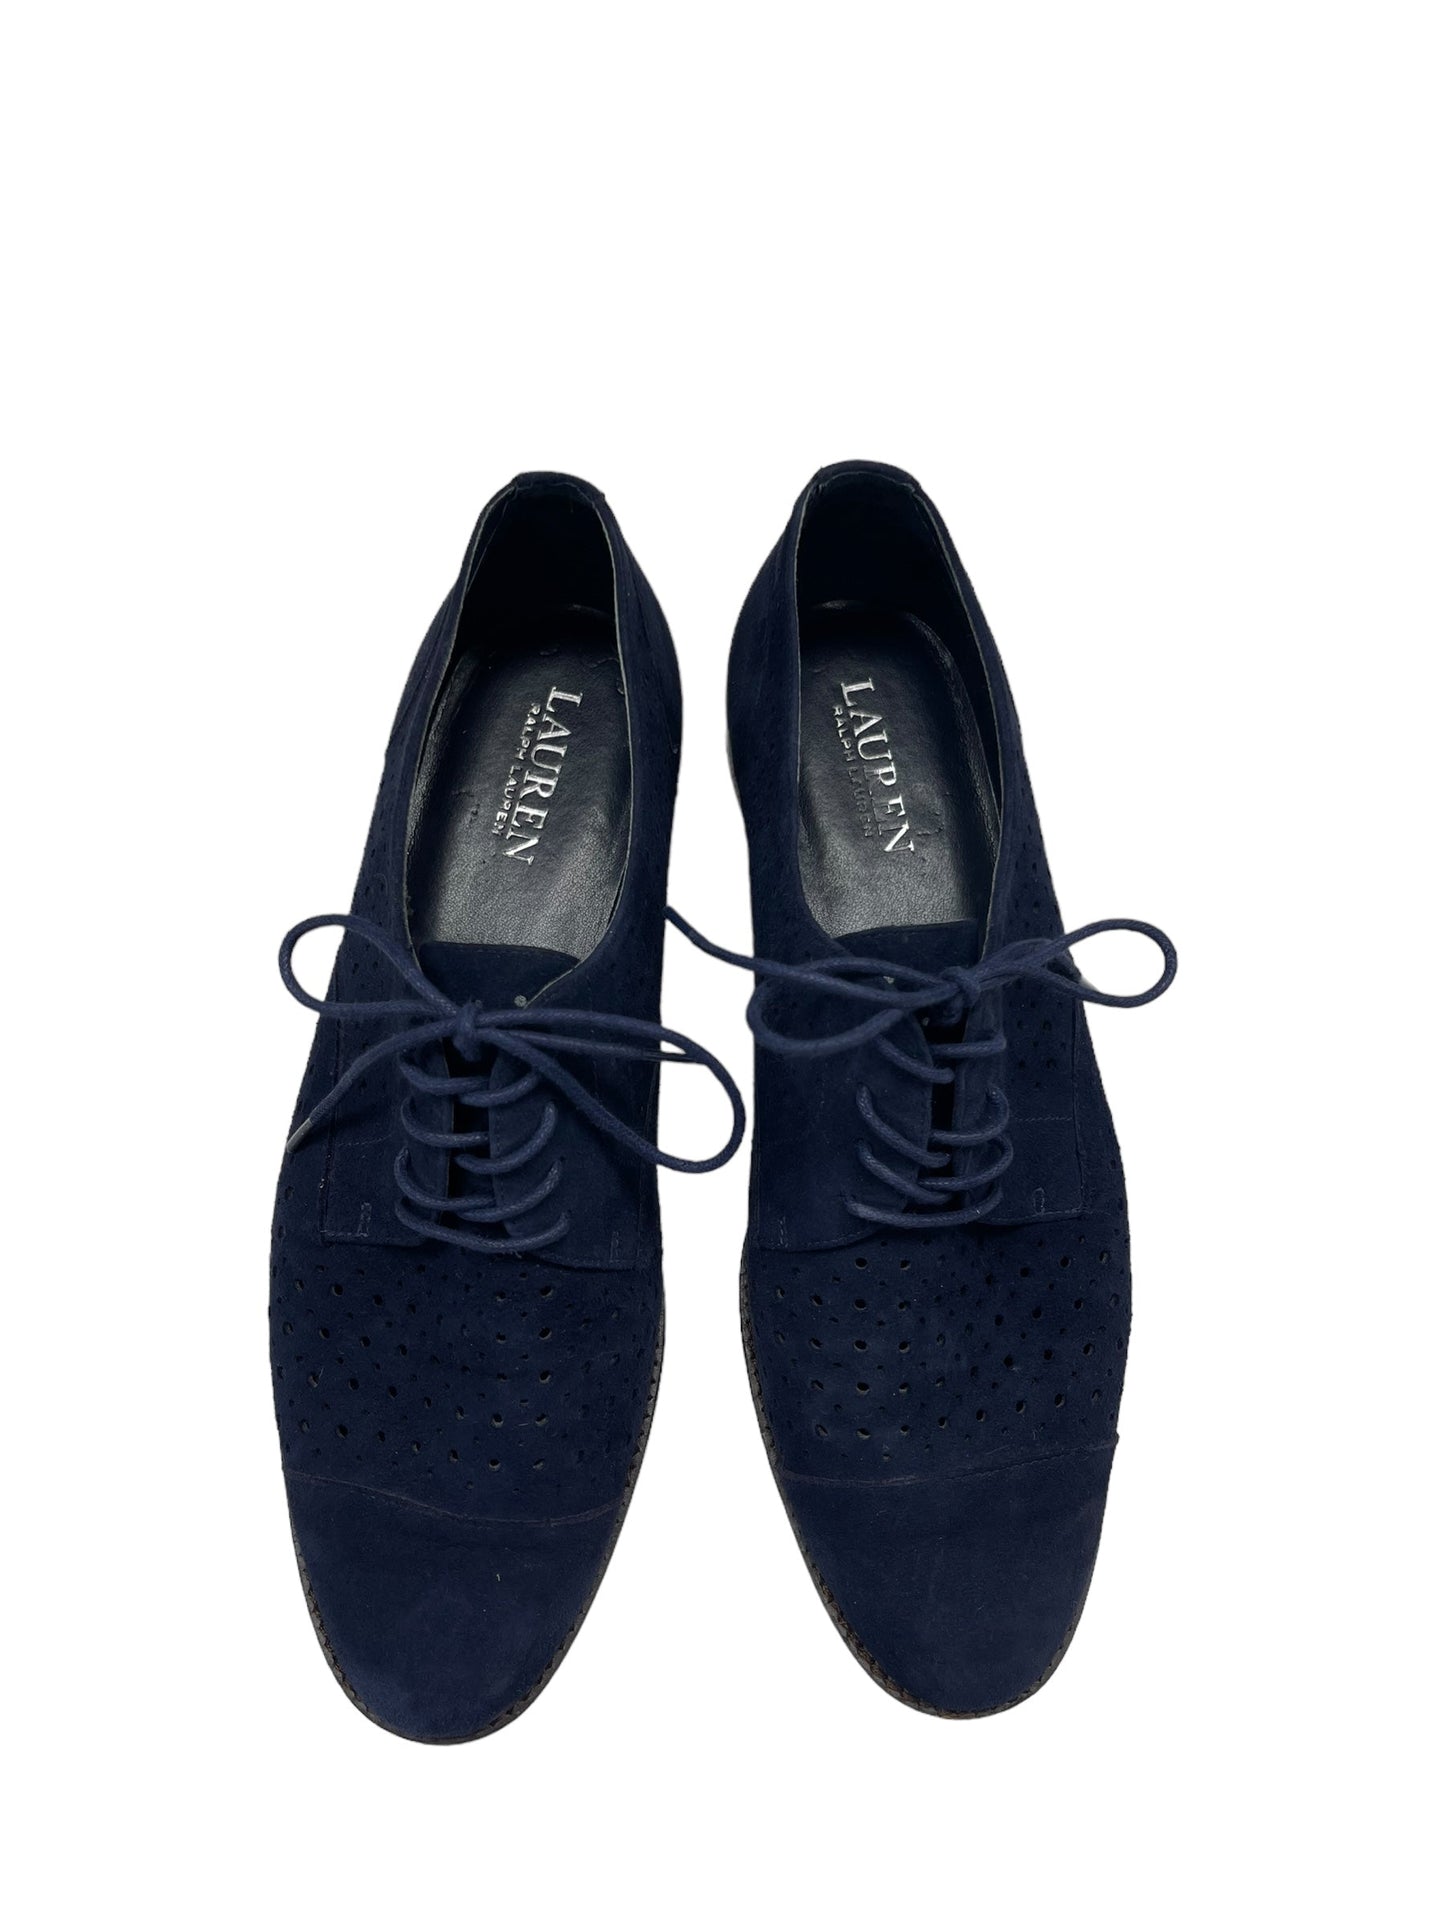 Navy Shoes Flats Lauren By Ralph Lauren, Size 8.5